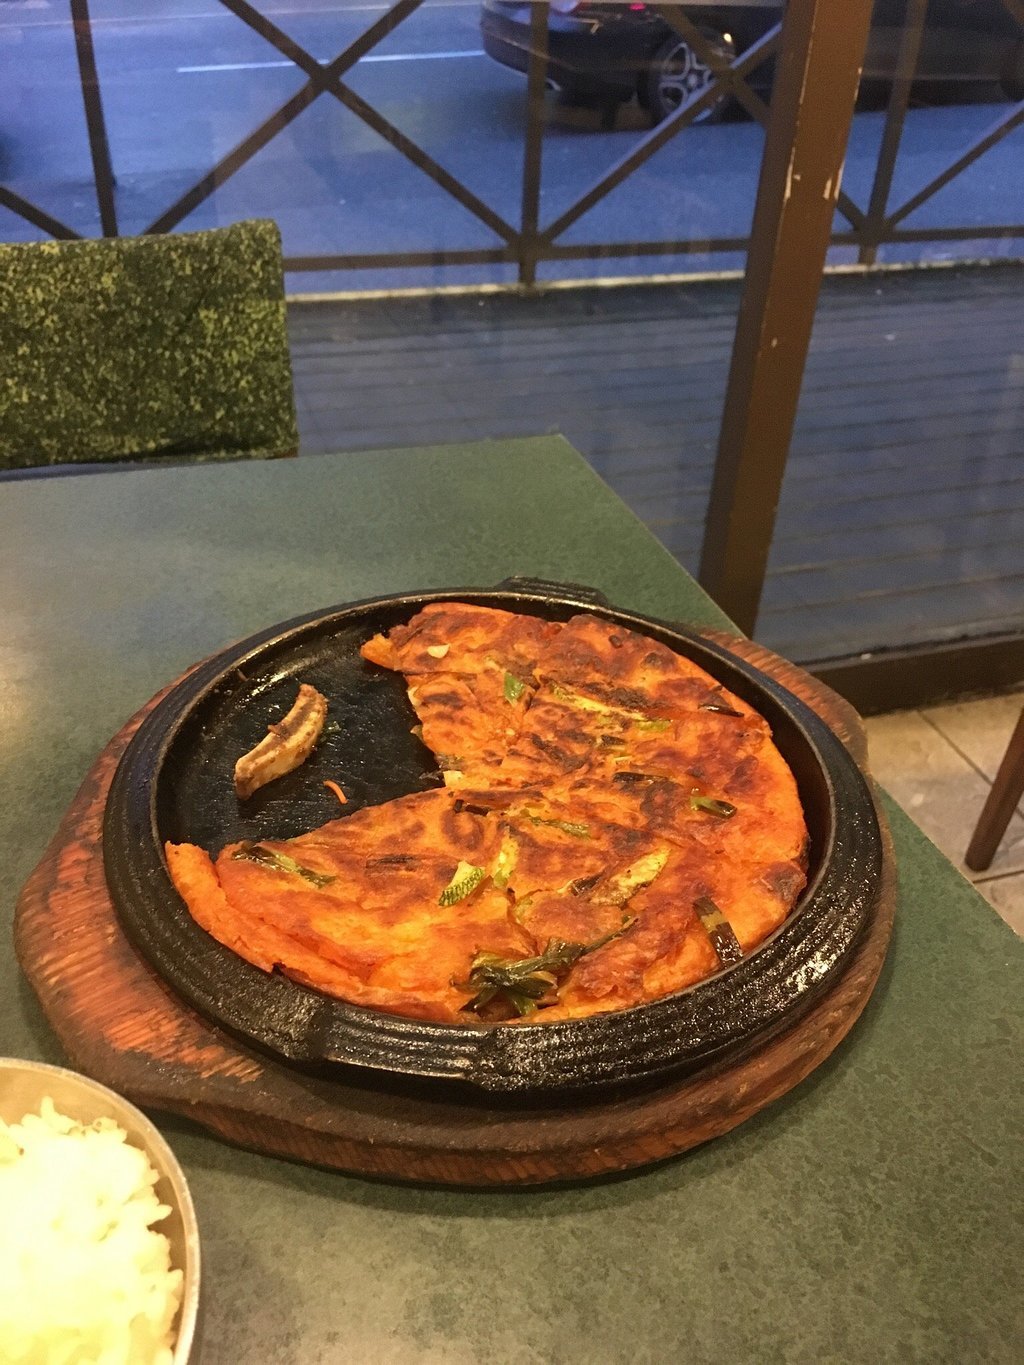 Norboo Korean Restaurant